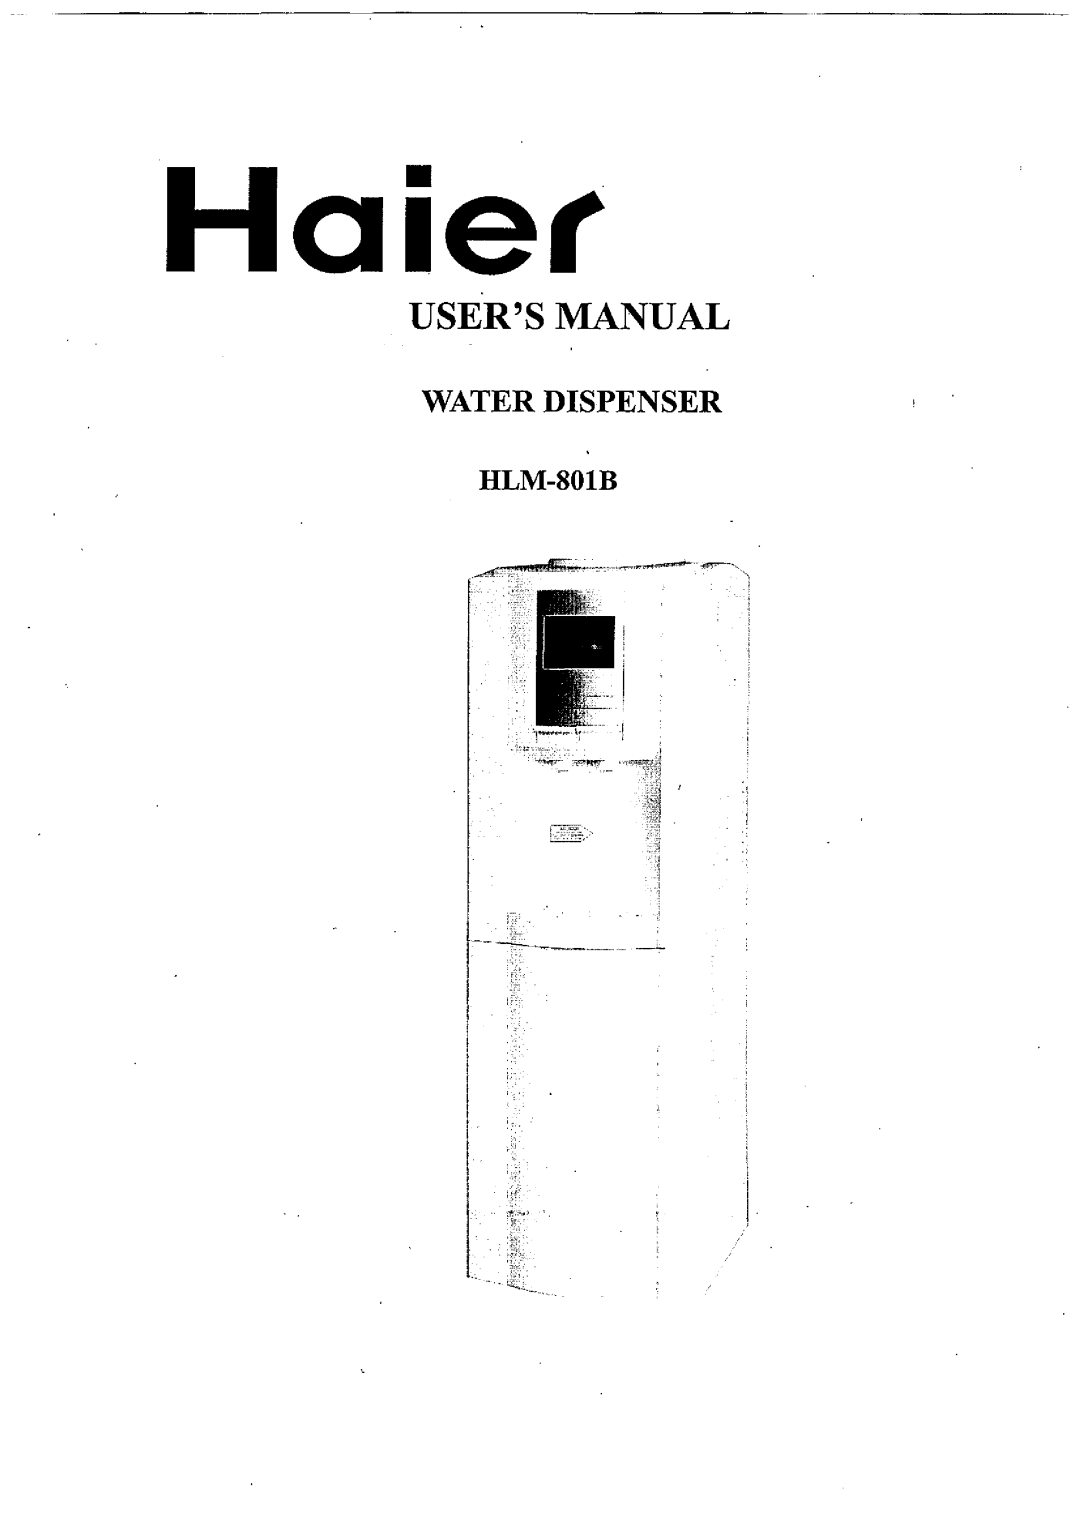 Haier HLM-801B manual 